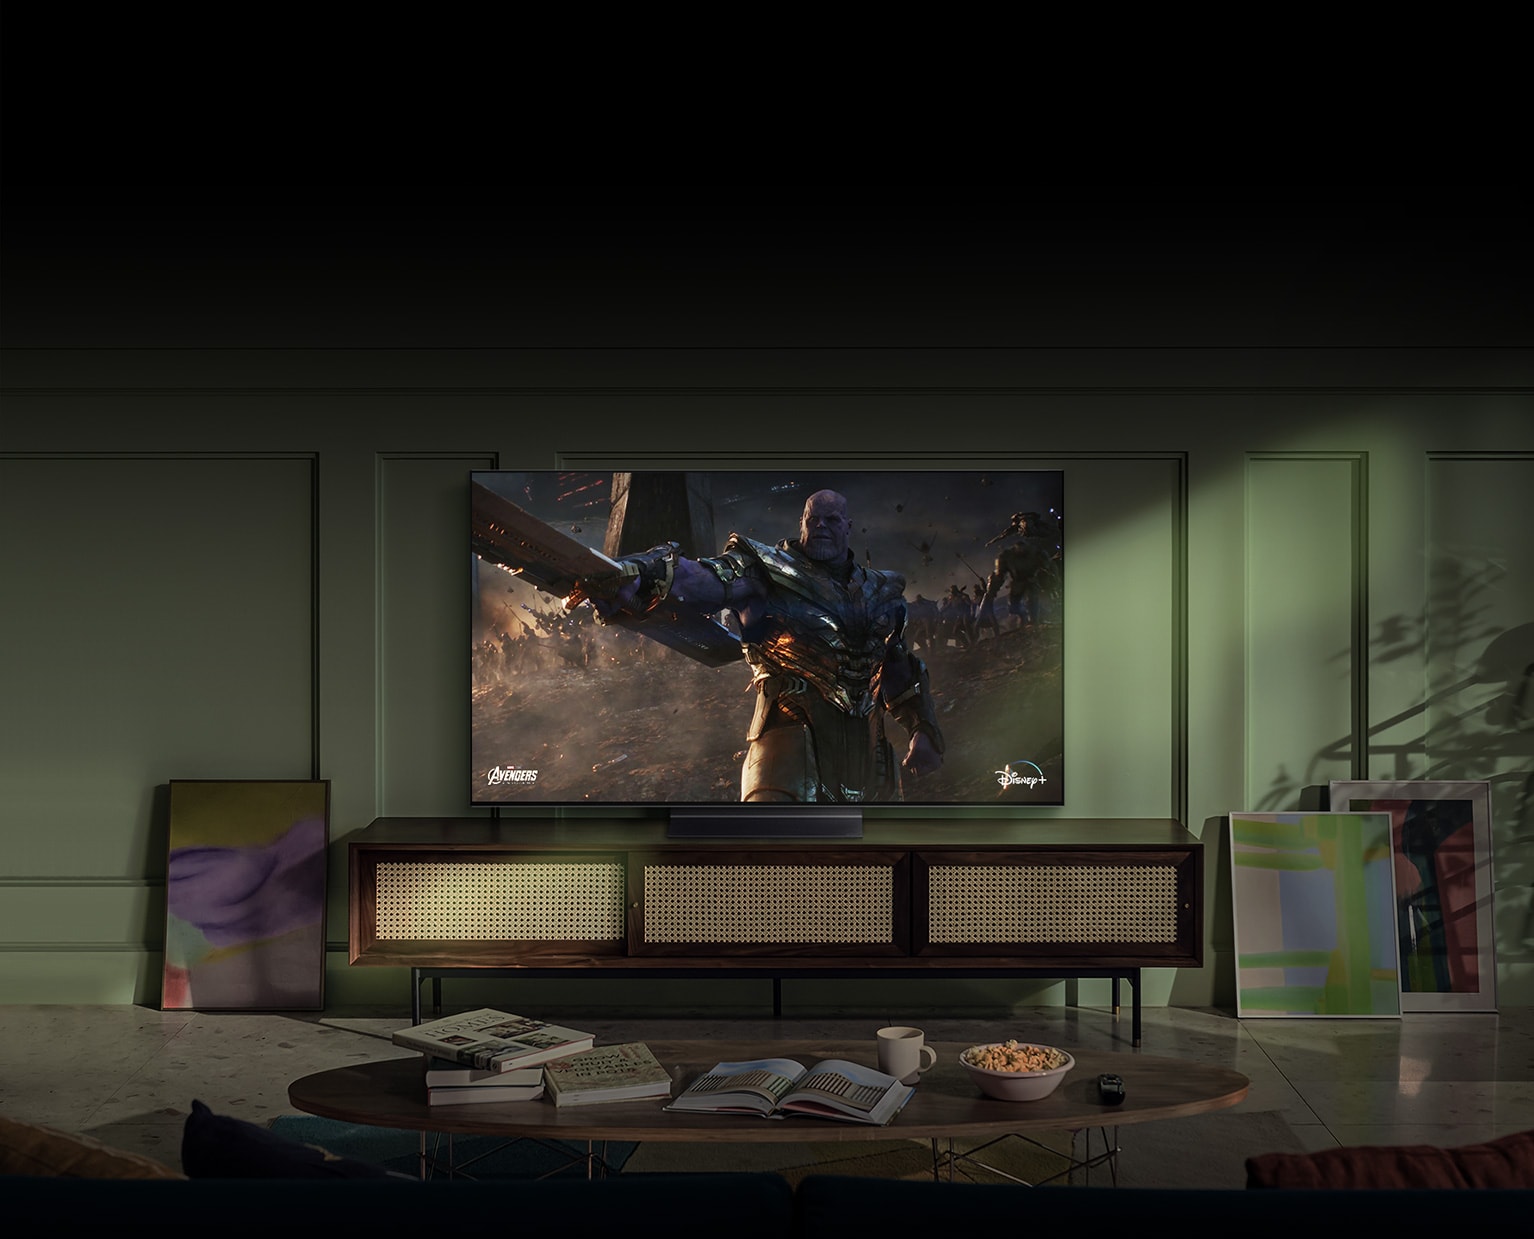 Динозавър скача през екрана на телевизора LG OLED, докато сцената оживява в стаята